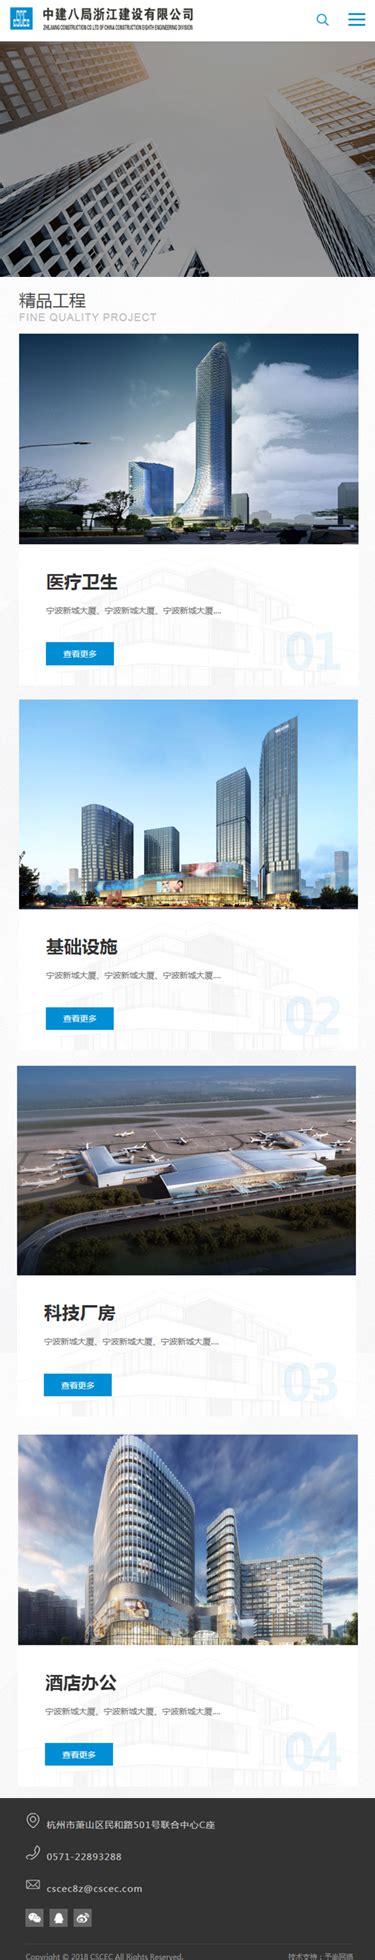 杭州网站建设_品牌网站设计_小程序开发_APP开发_专业网站制作公司-杭州乐邦科技